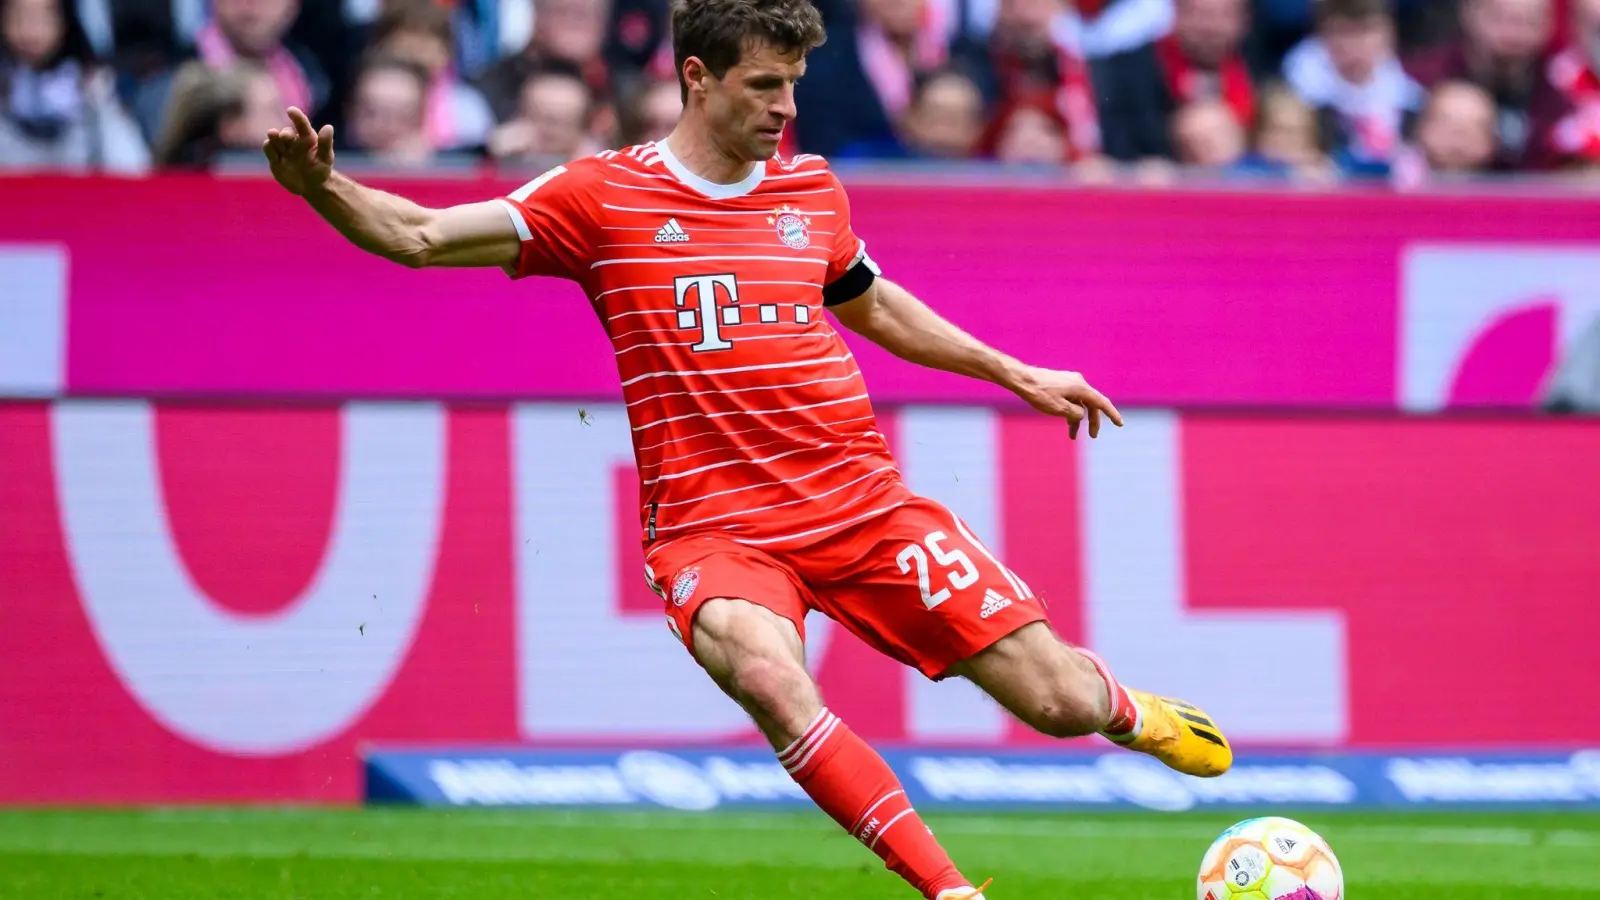 Der FC Bayern München um Thomas Müller geht wieder auf Asien-Reise. (Foto: Tom Weller/dpa)